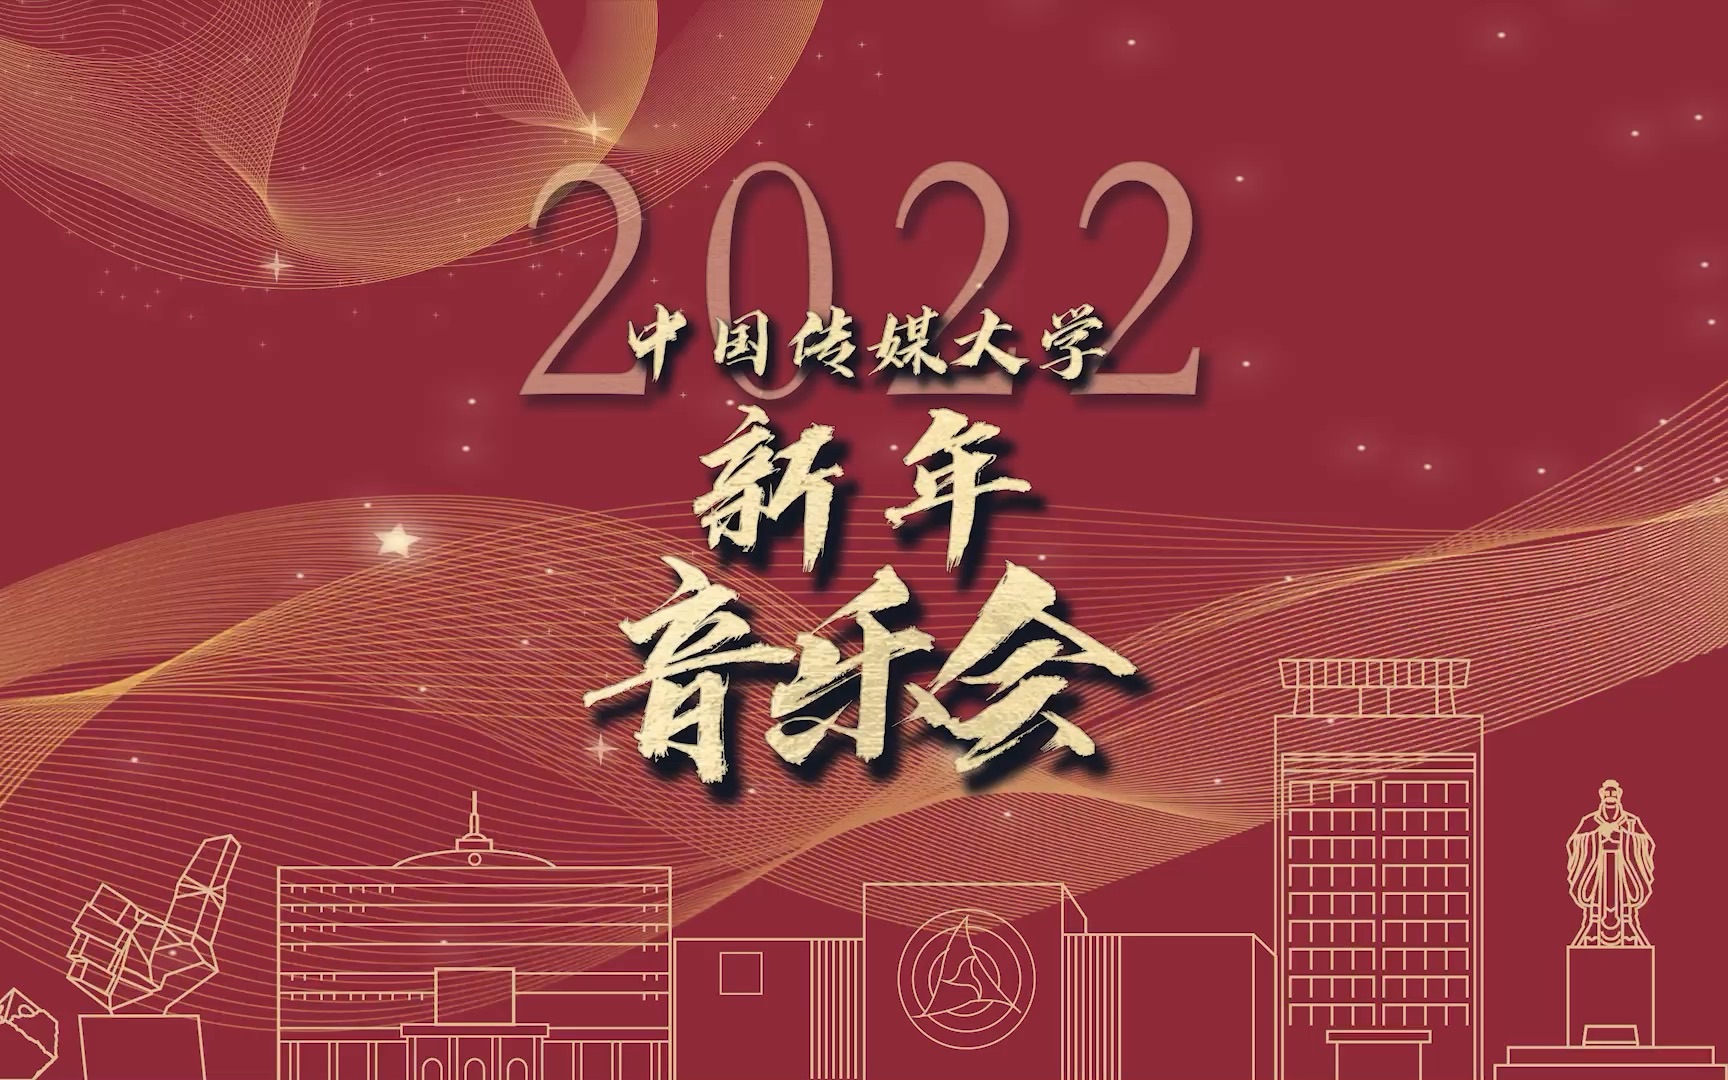 [图]中国传媒大学2022新年音乐会·上